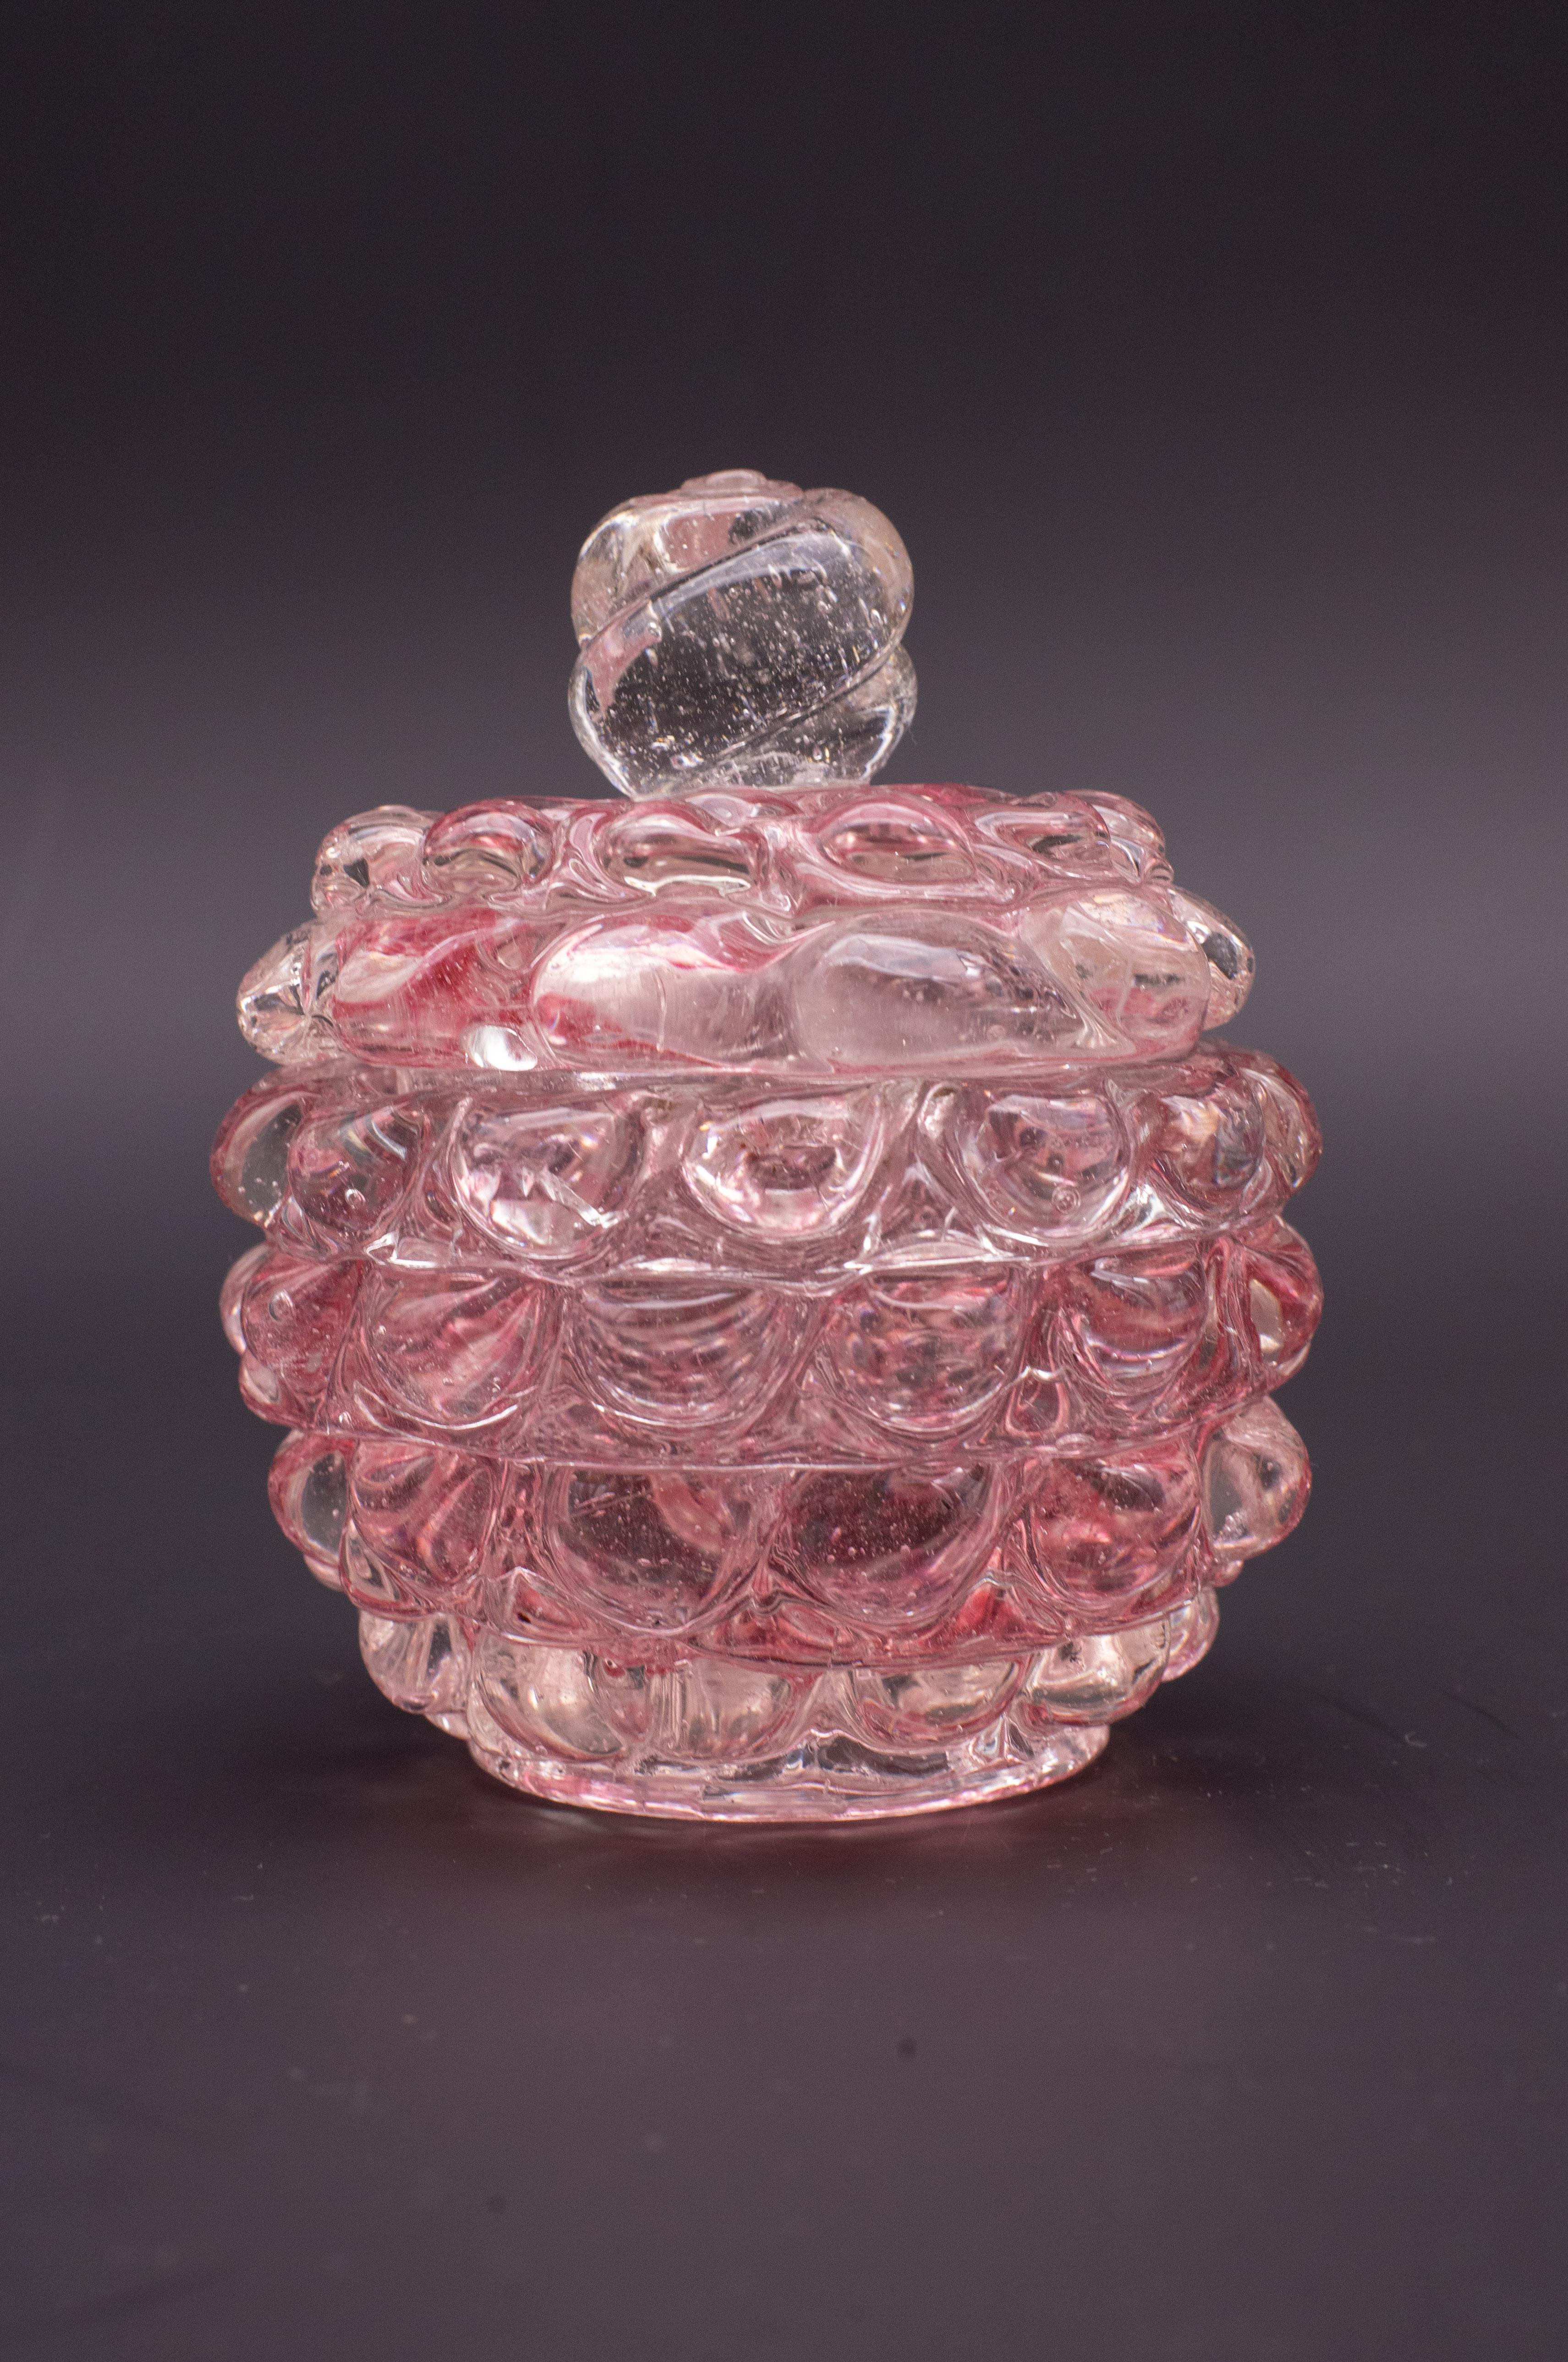 Extraordinaire et unique vase de la série des lentilles roses de la verrerie Barovier&Toso, période 1940.

Le vase mesure 12 centimètres de haut et 12 centimètres de diamètre.

Excellent état vintage.

Les autres vases transparents ne sont pas